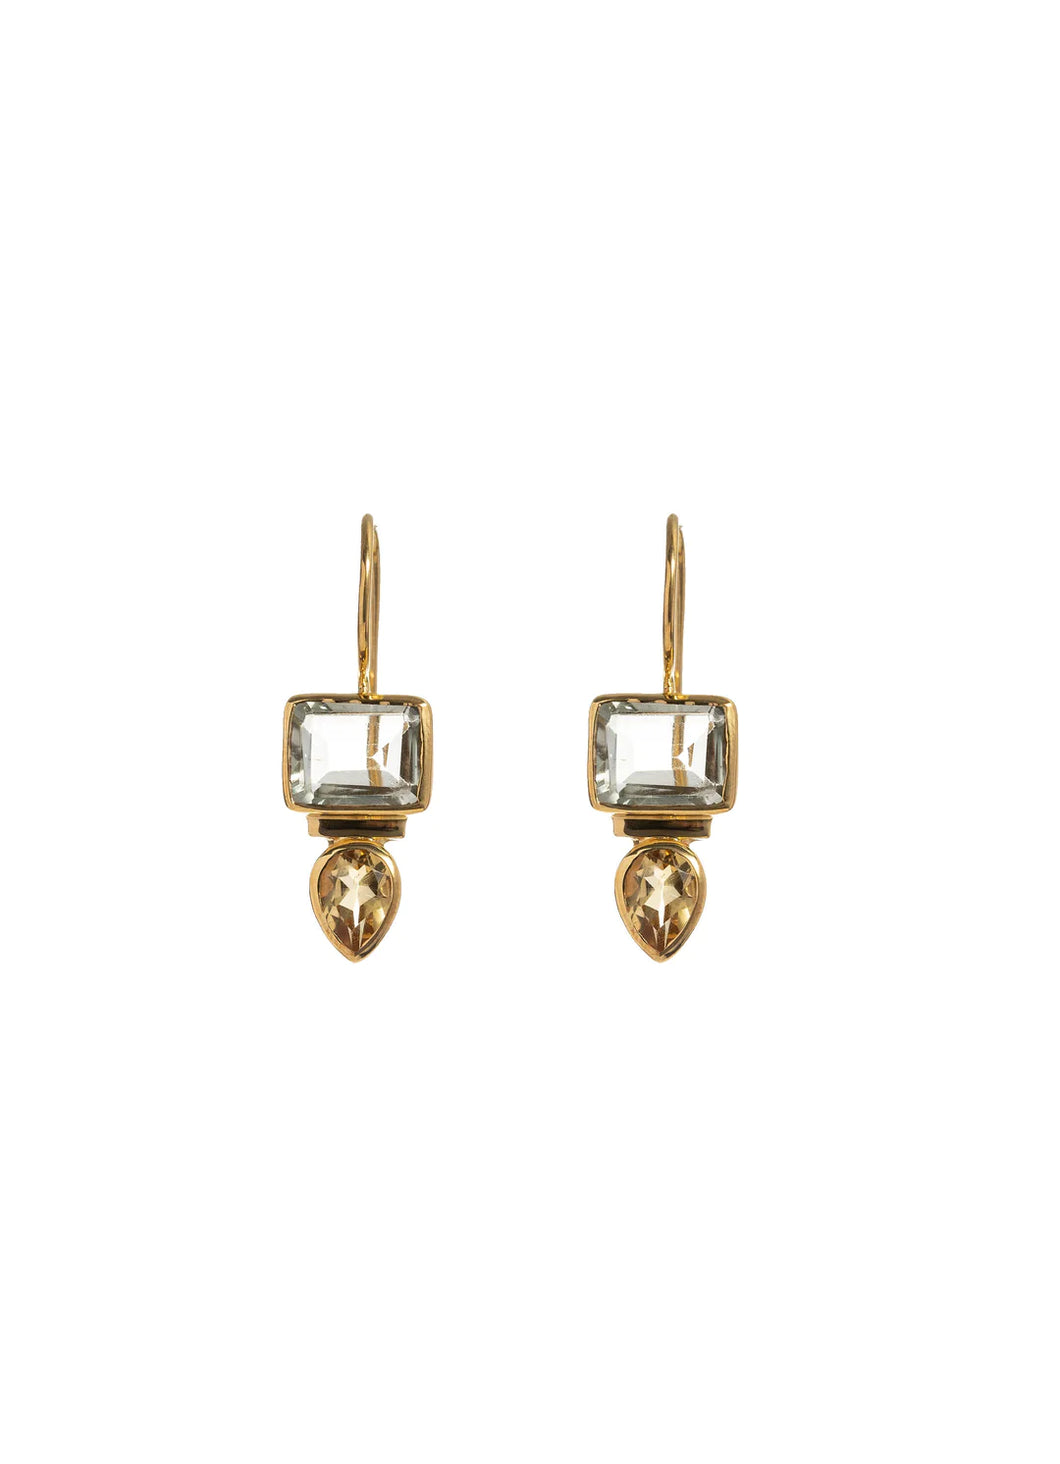 Sal Green Amethyst Gold Earrings